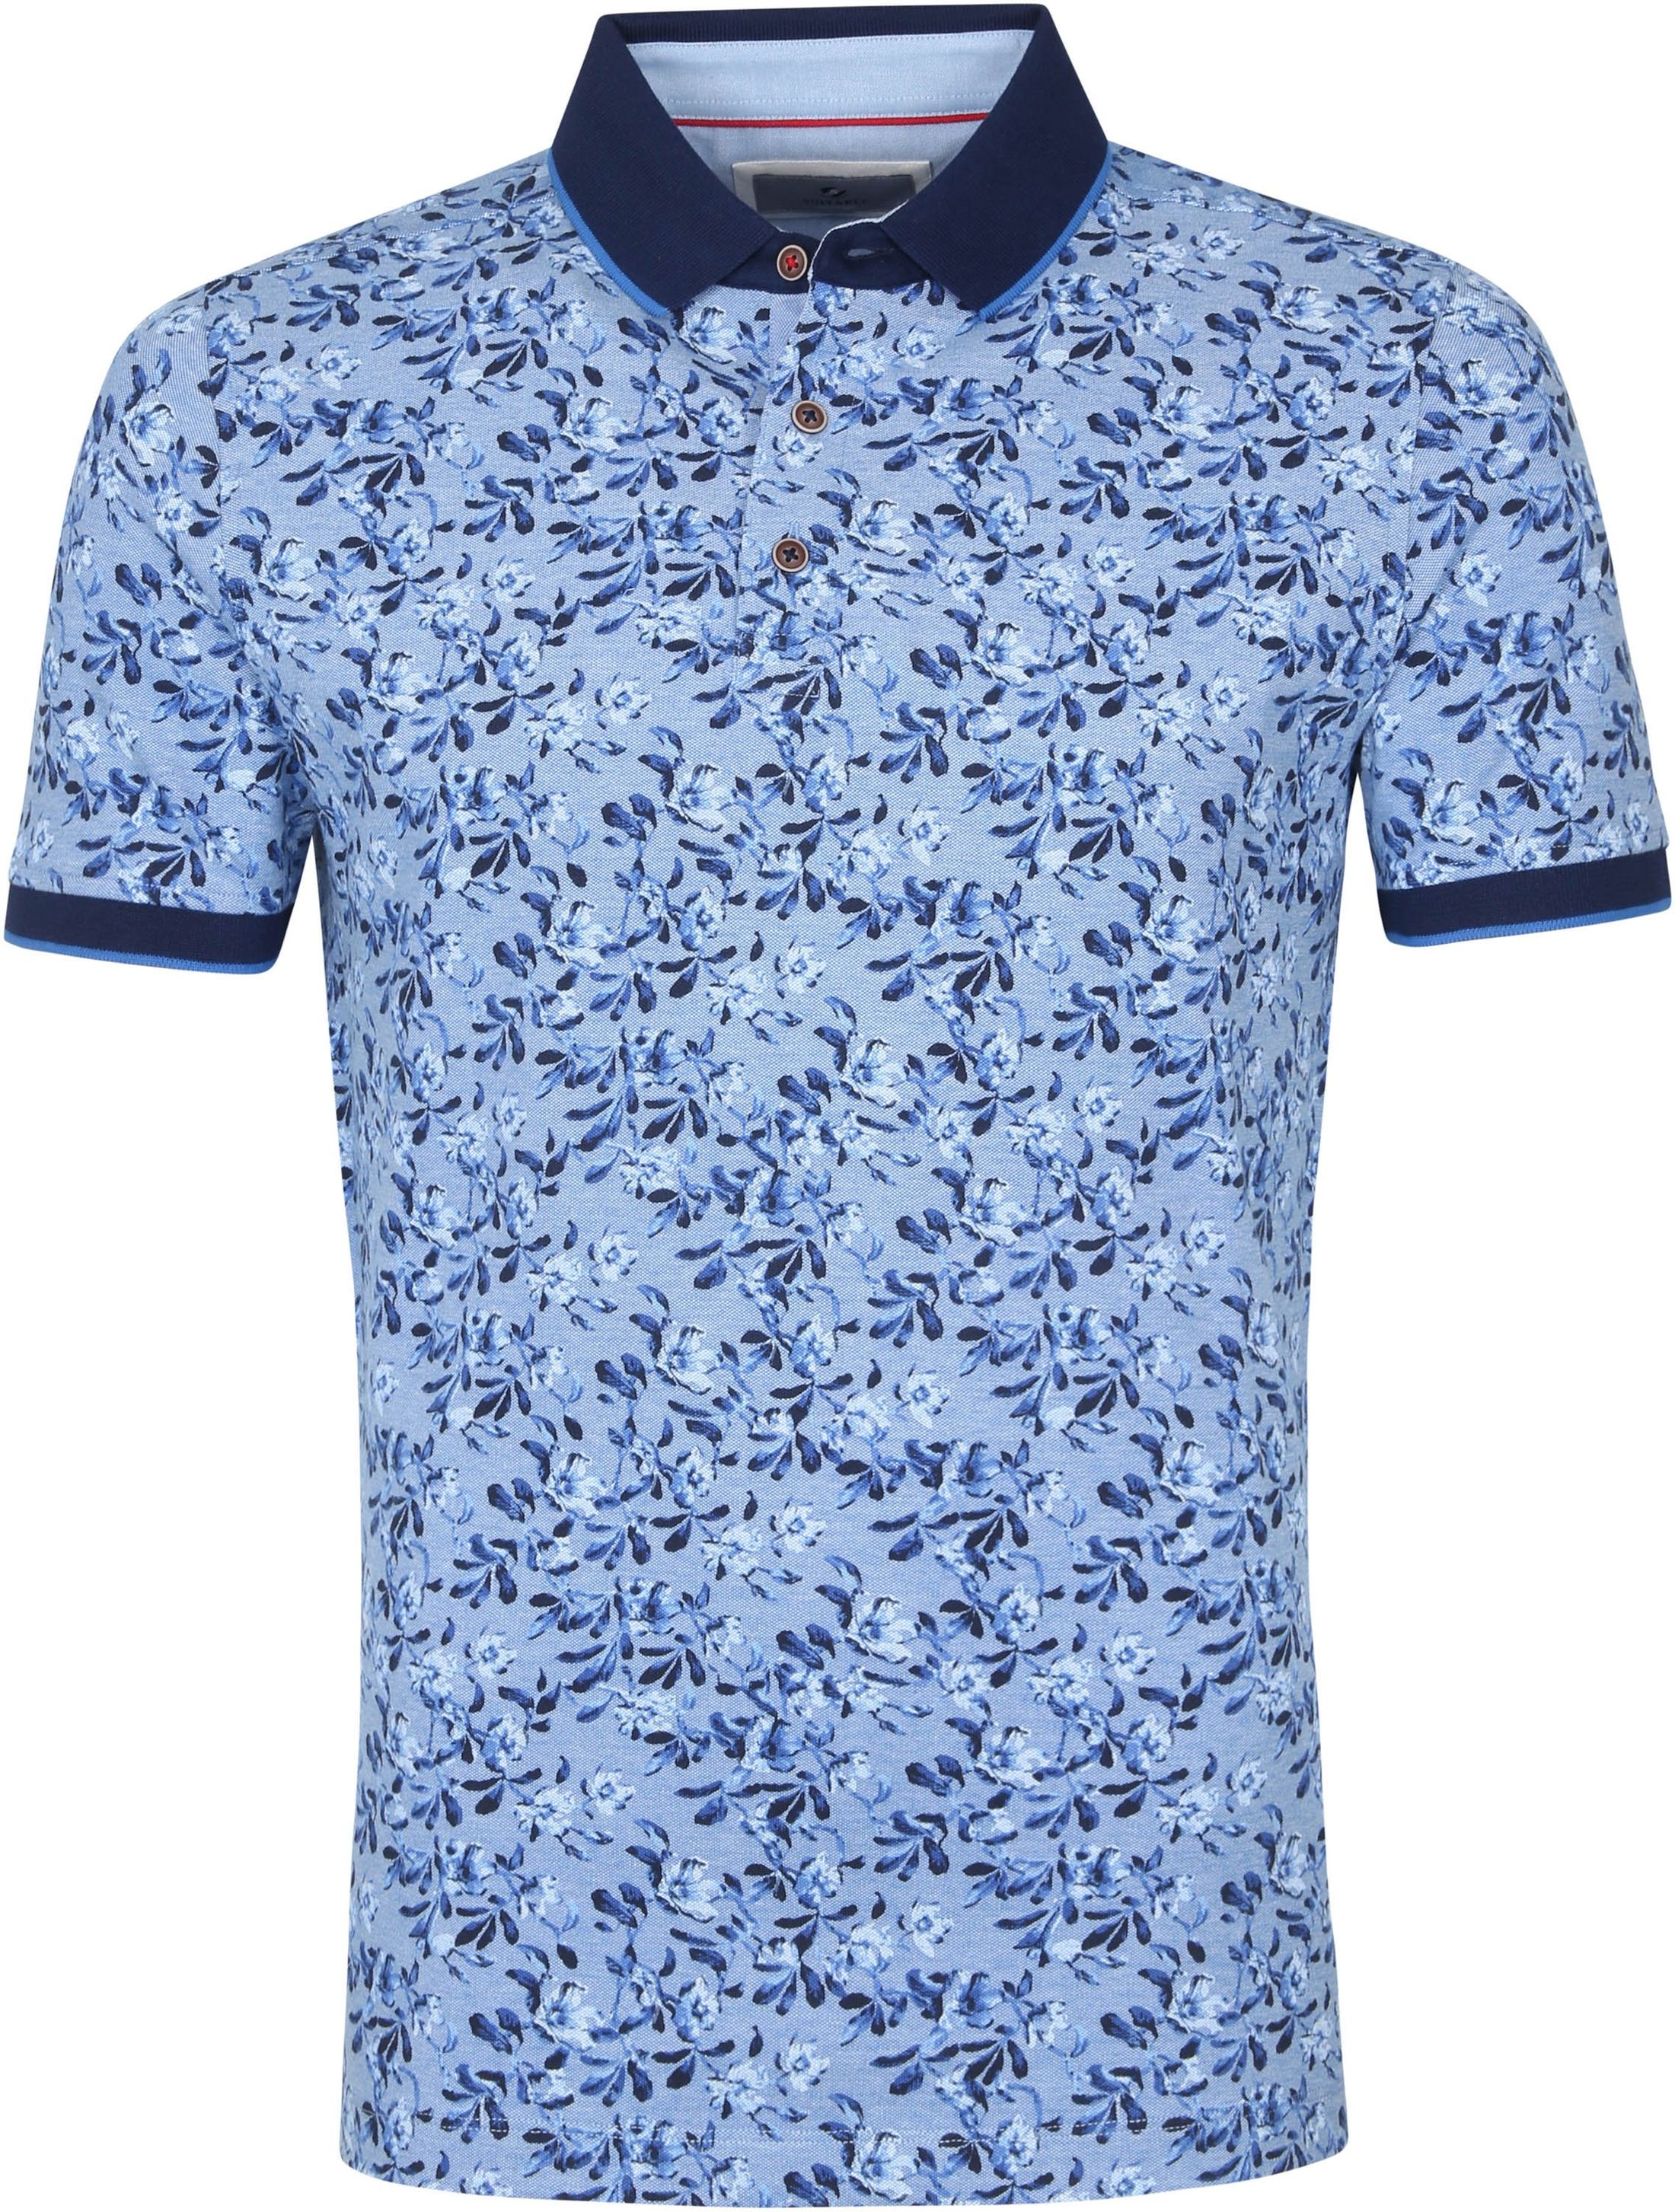 Suitable Prestige Polo Shirt Flower Blue size M